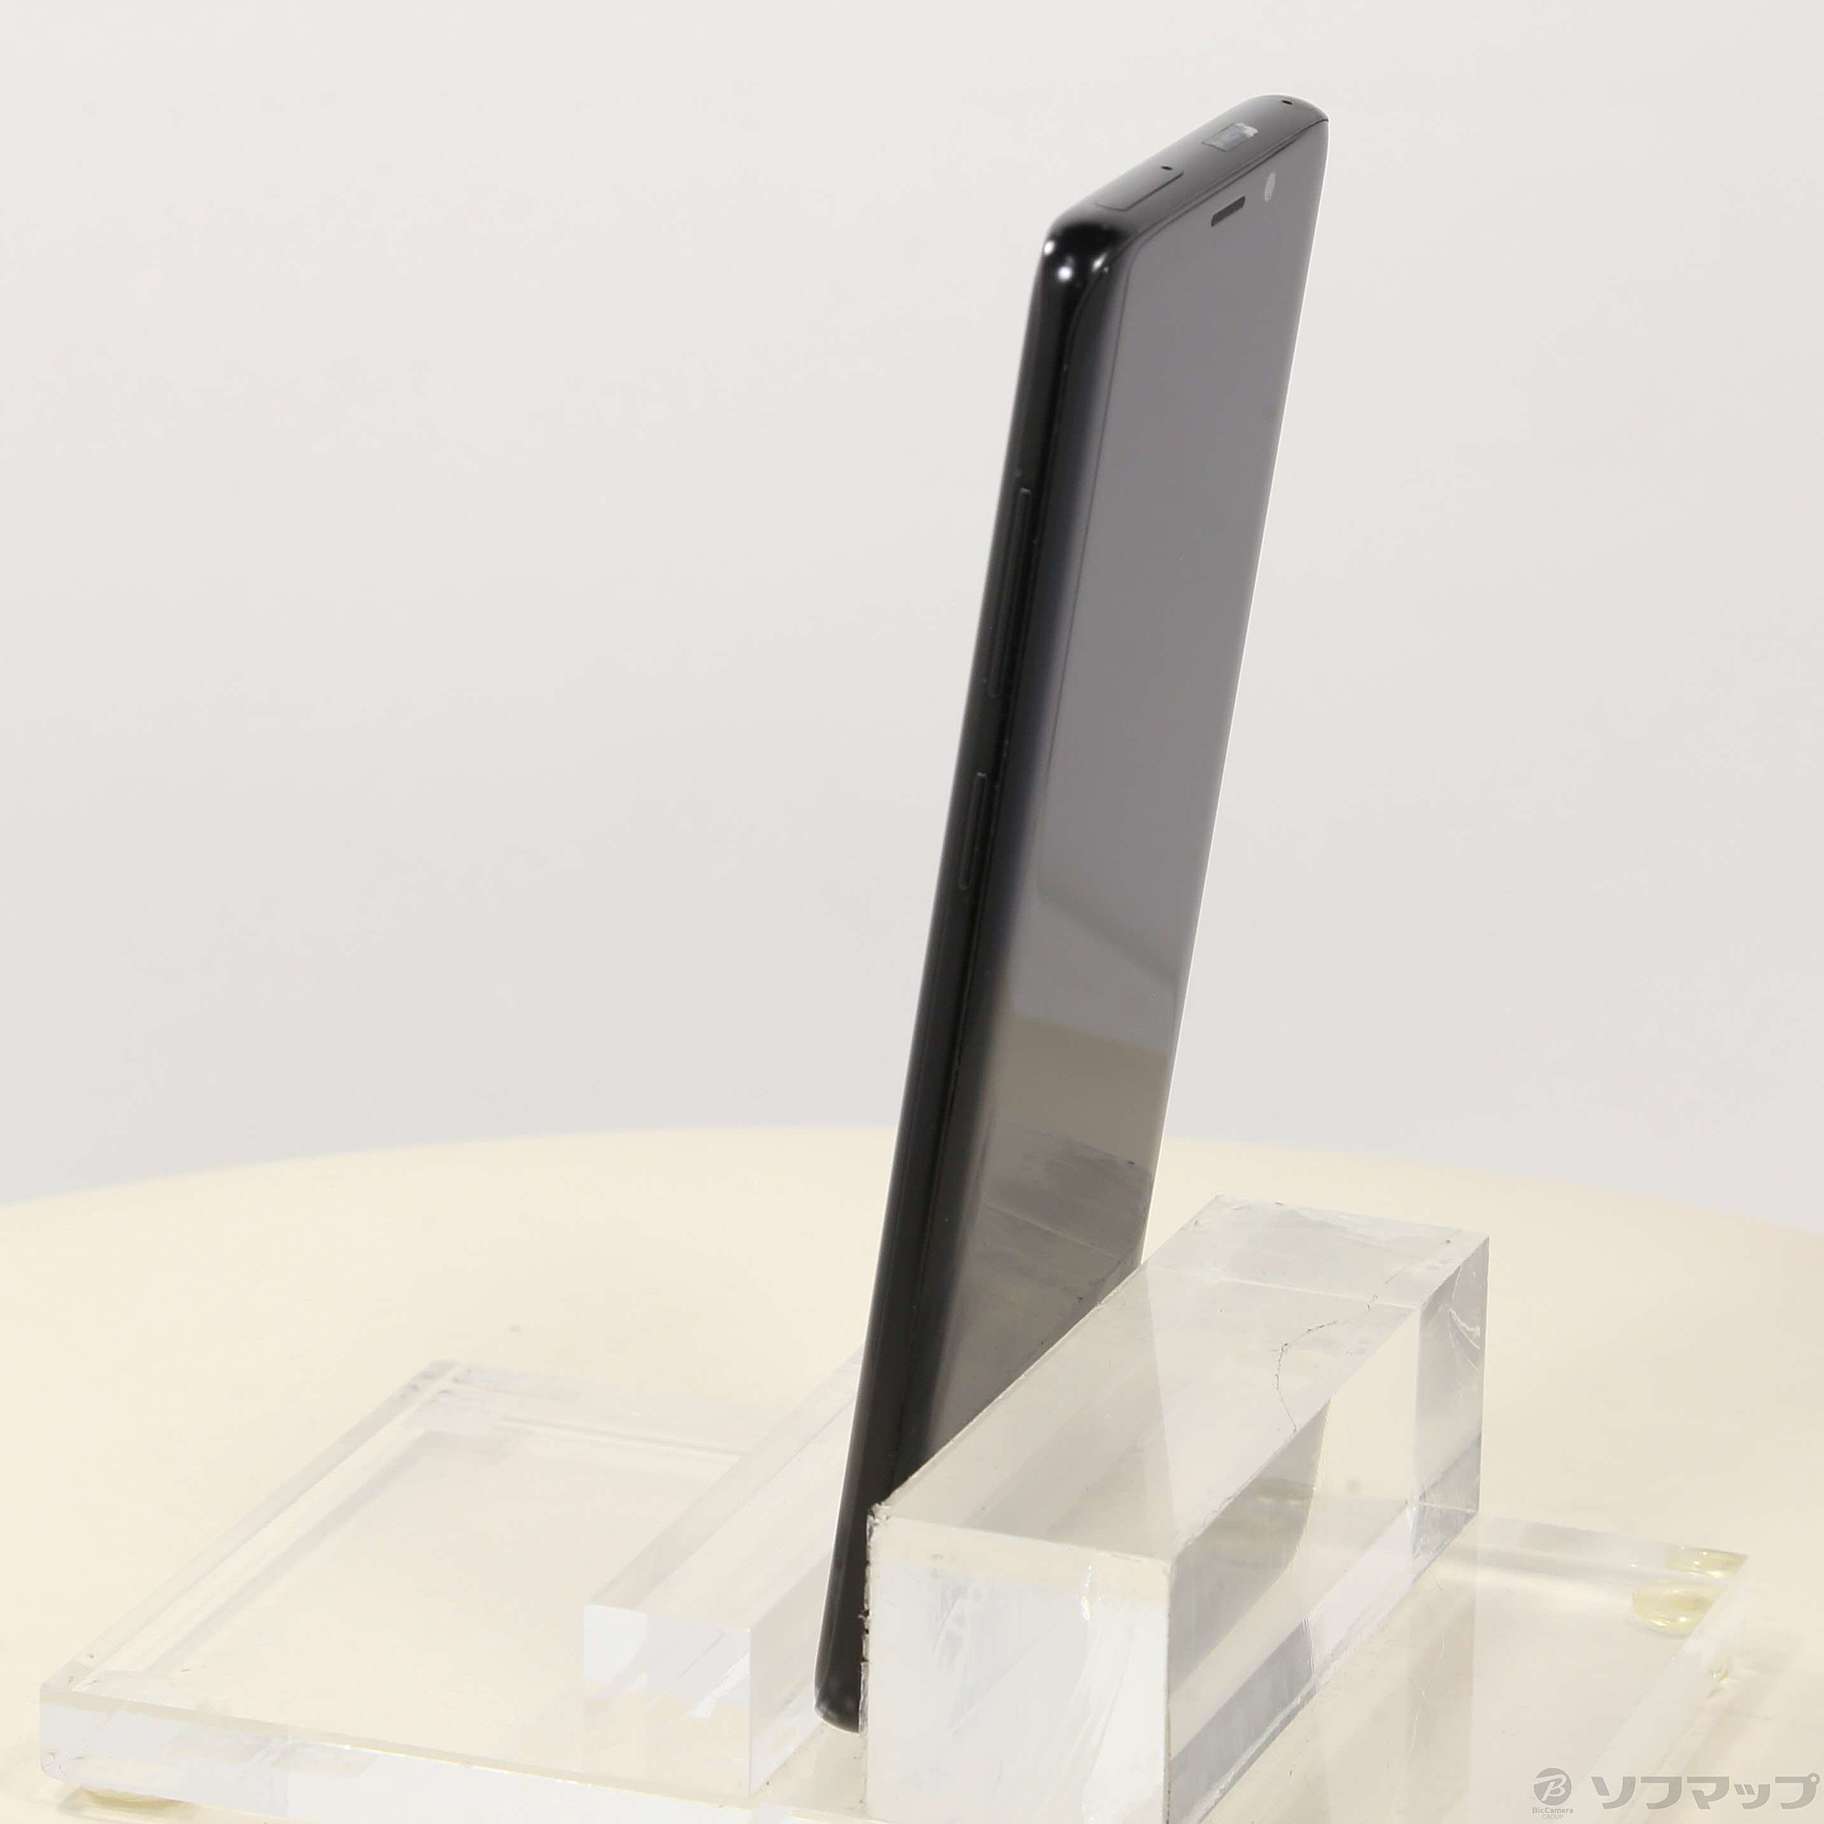 外装・電池新品 ドコモ Galaxy S9+ SC-03K グレー SIMフリー